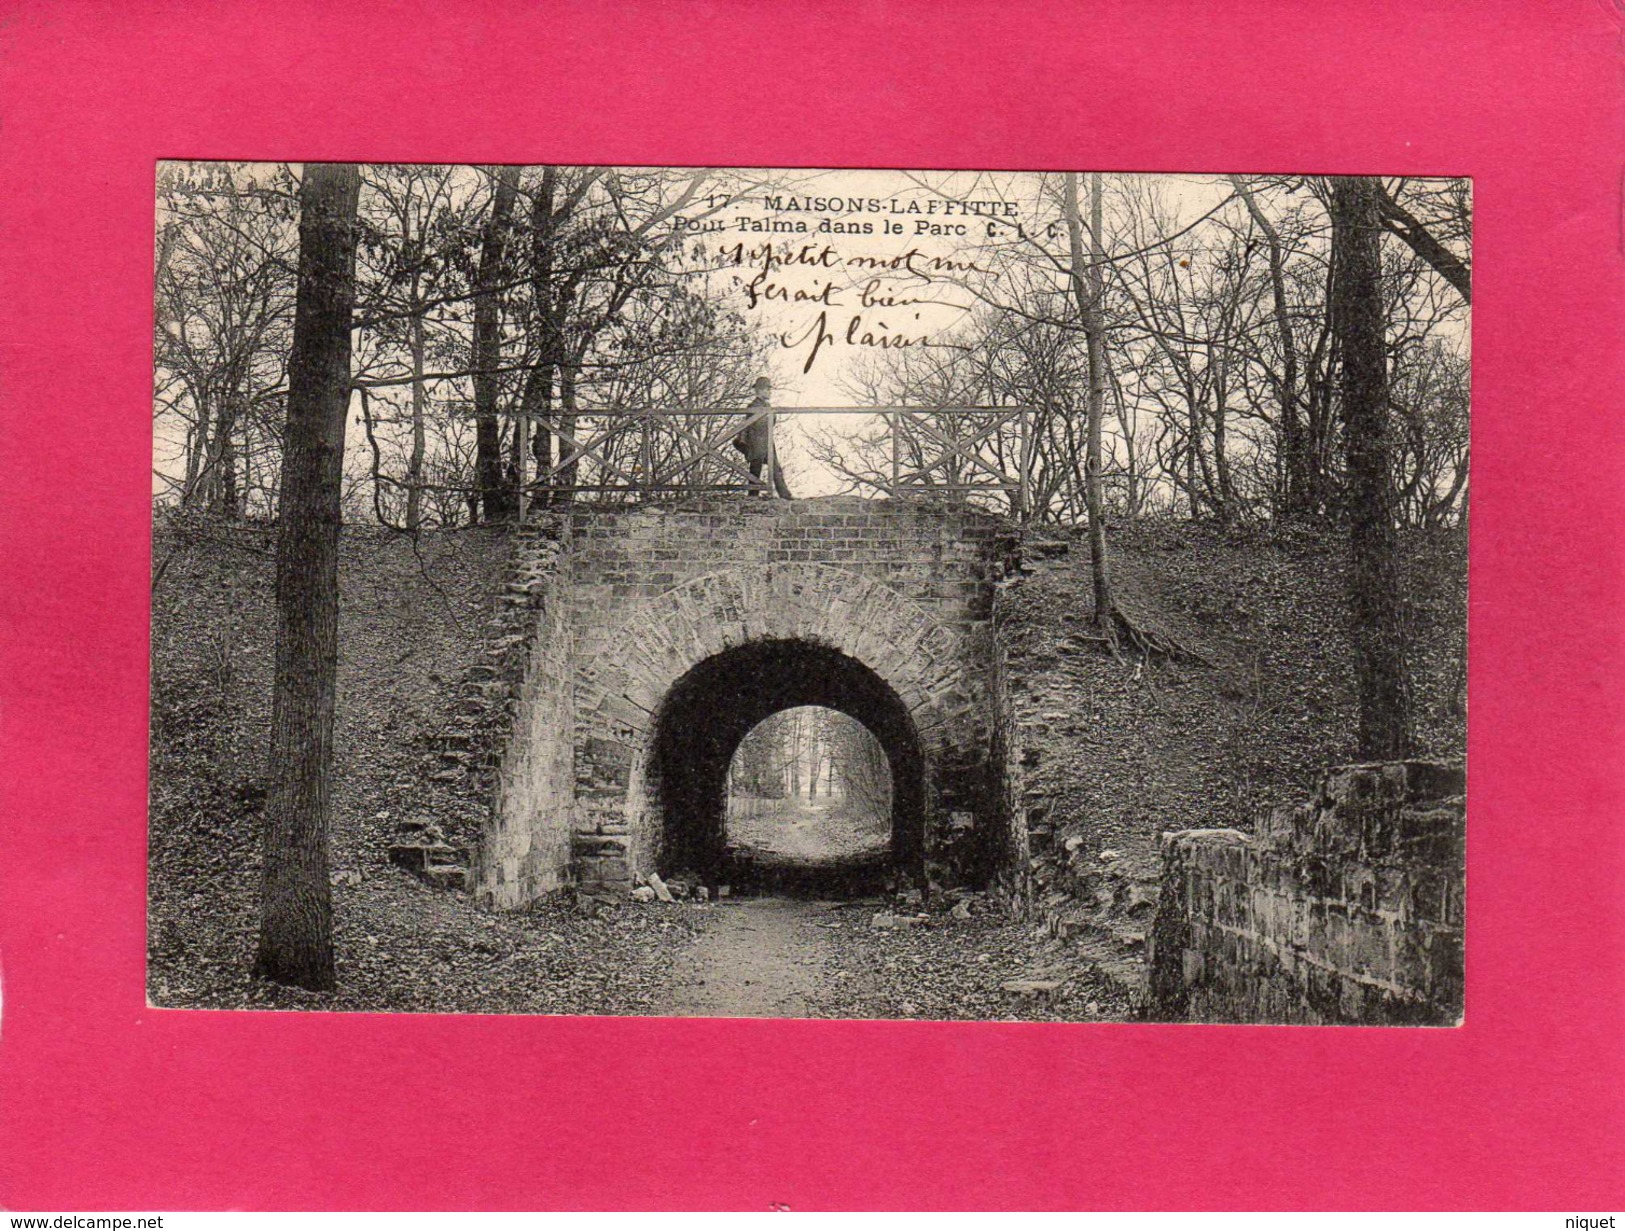 78 YVELINES, MAISONS-LAFFITTE, Pont Talma, Dans Le Parc, Animée, 1908, (C. L. C.) - Maisons-Laffitte